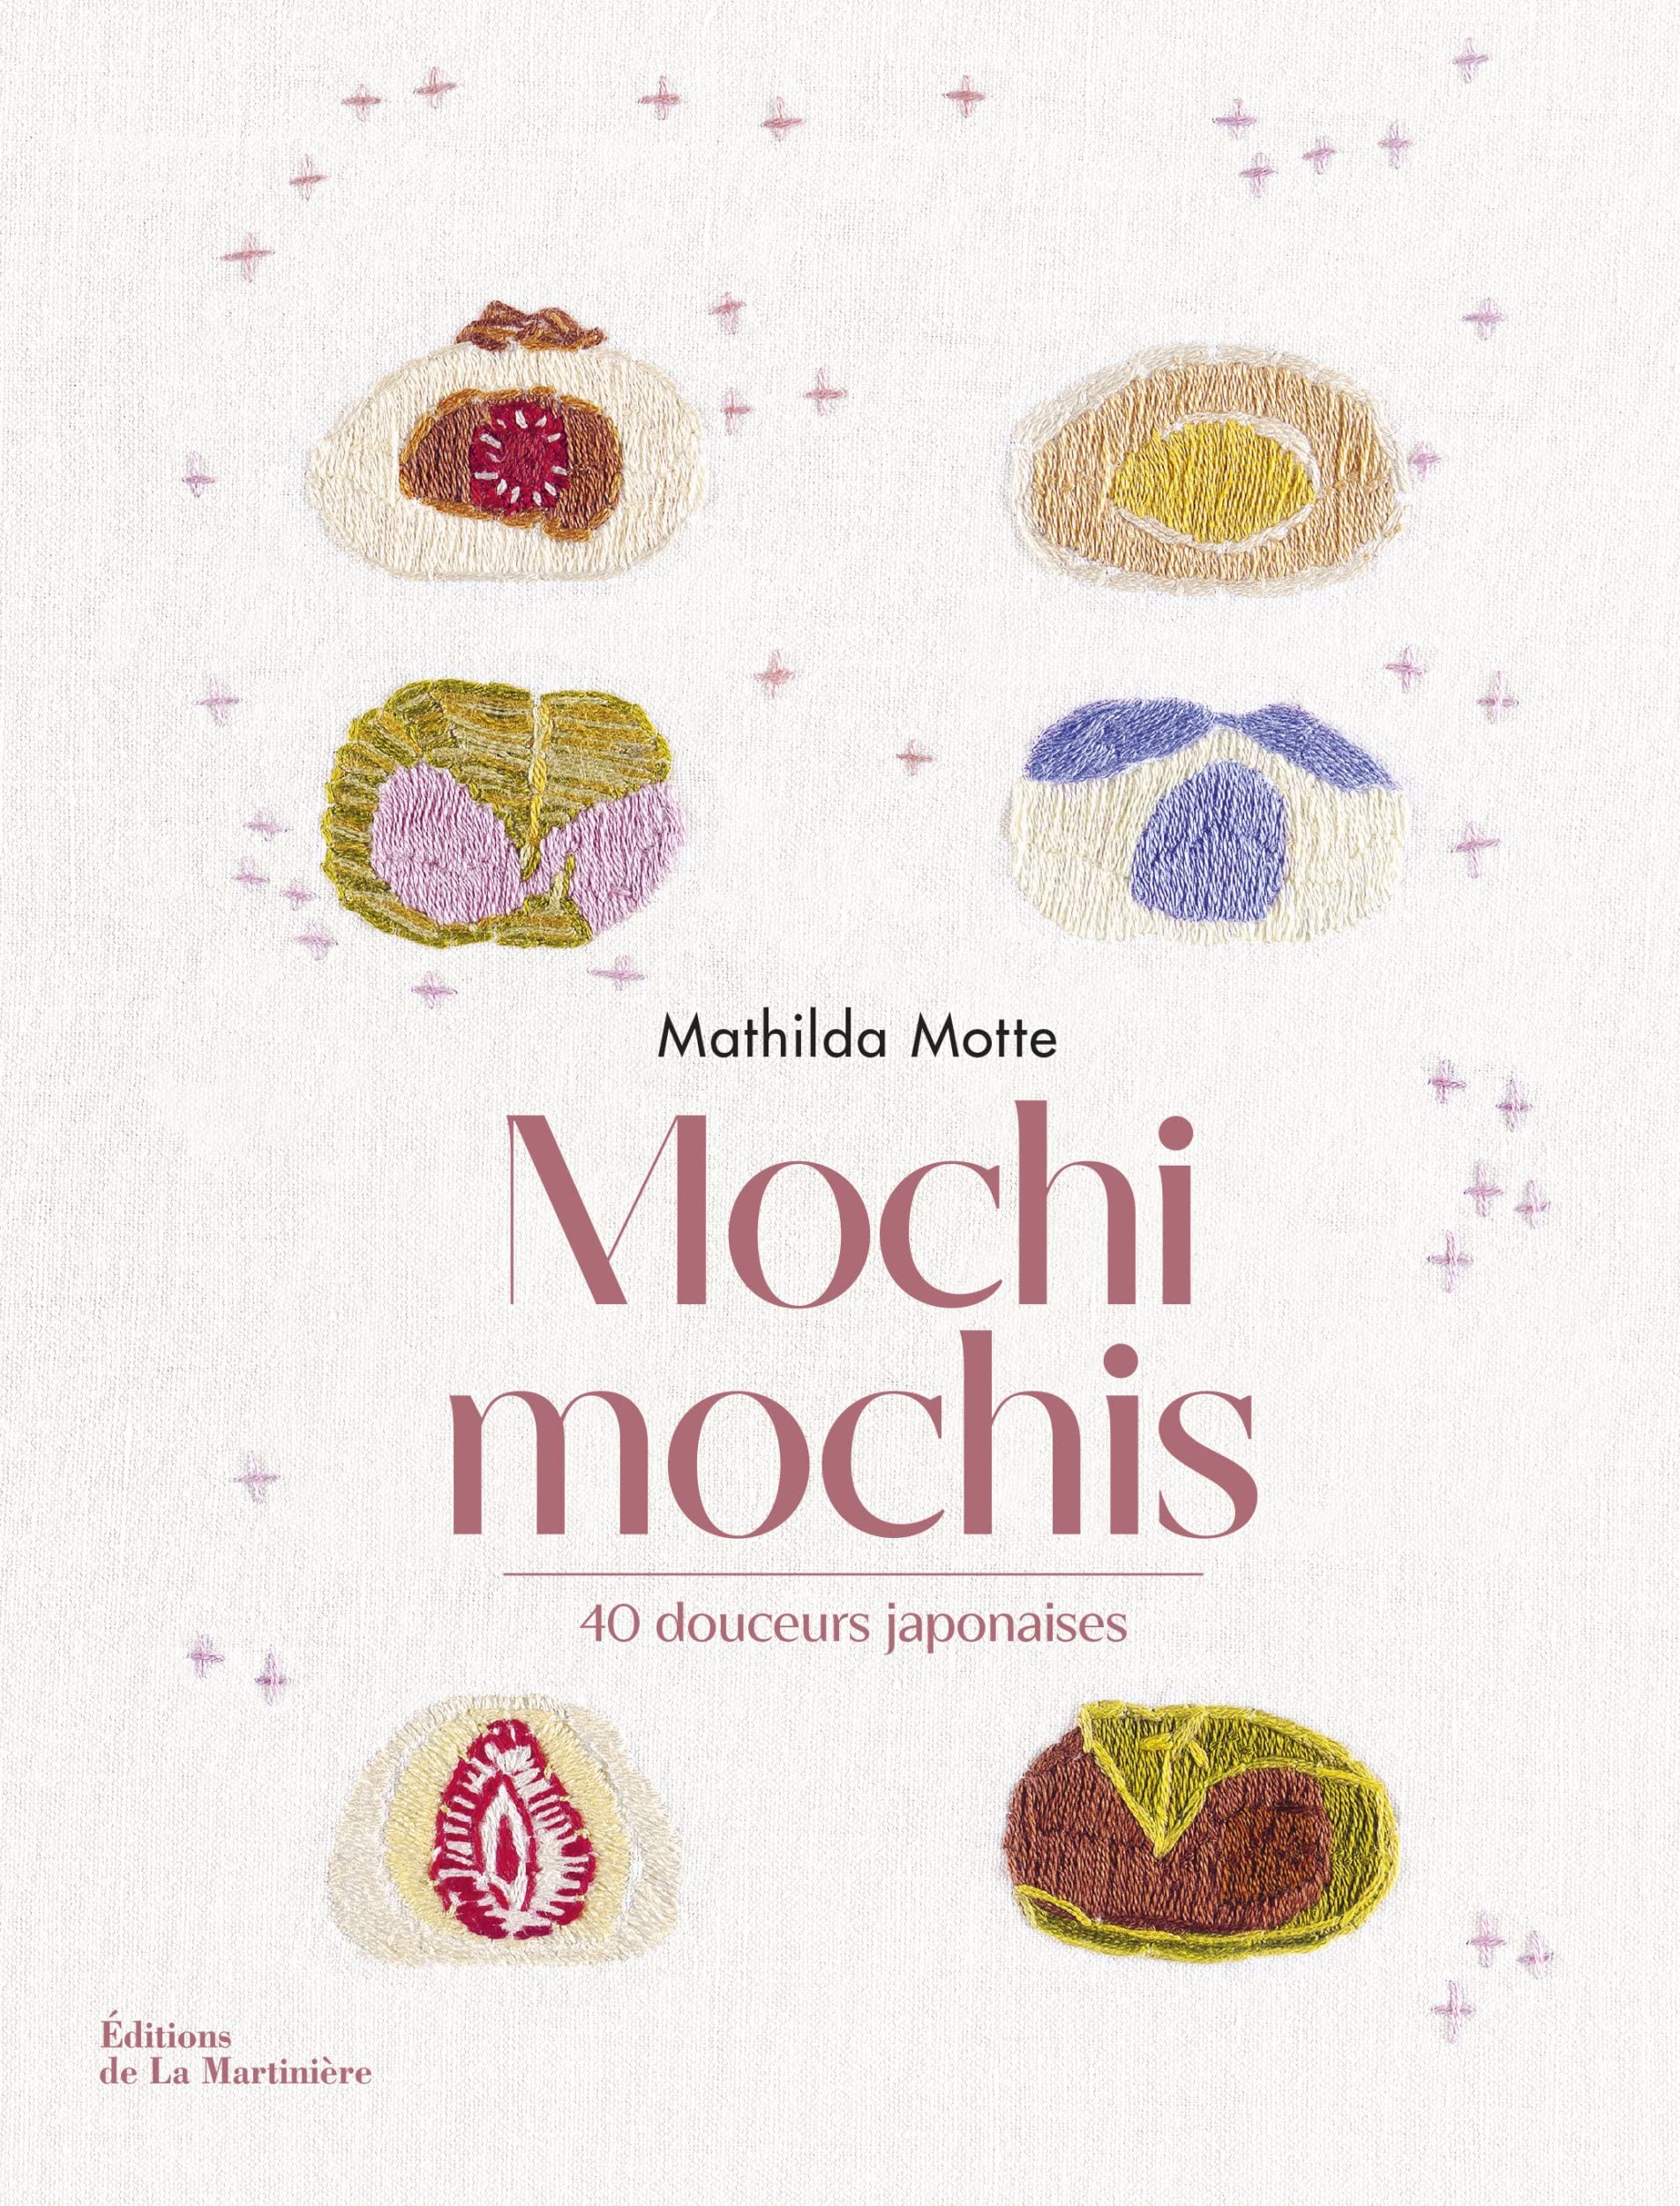 Mochi mochis: 40 douceurs japonaises (Mathilda Motte)